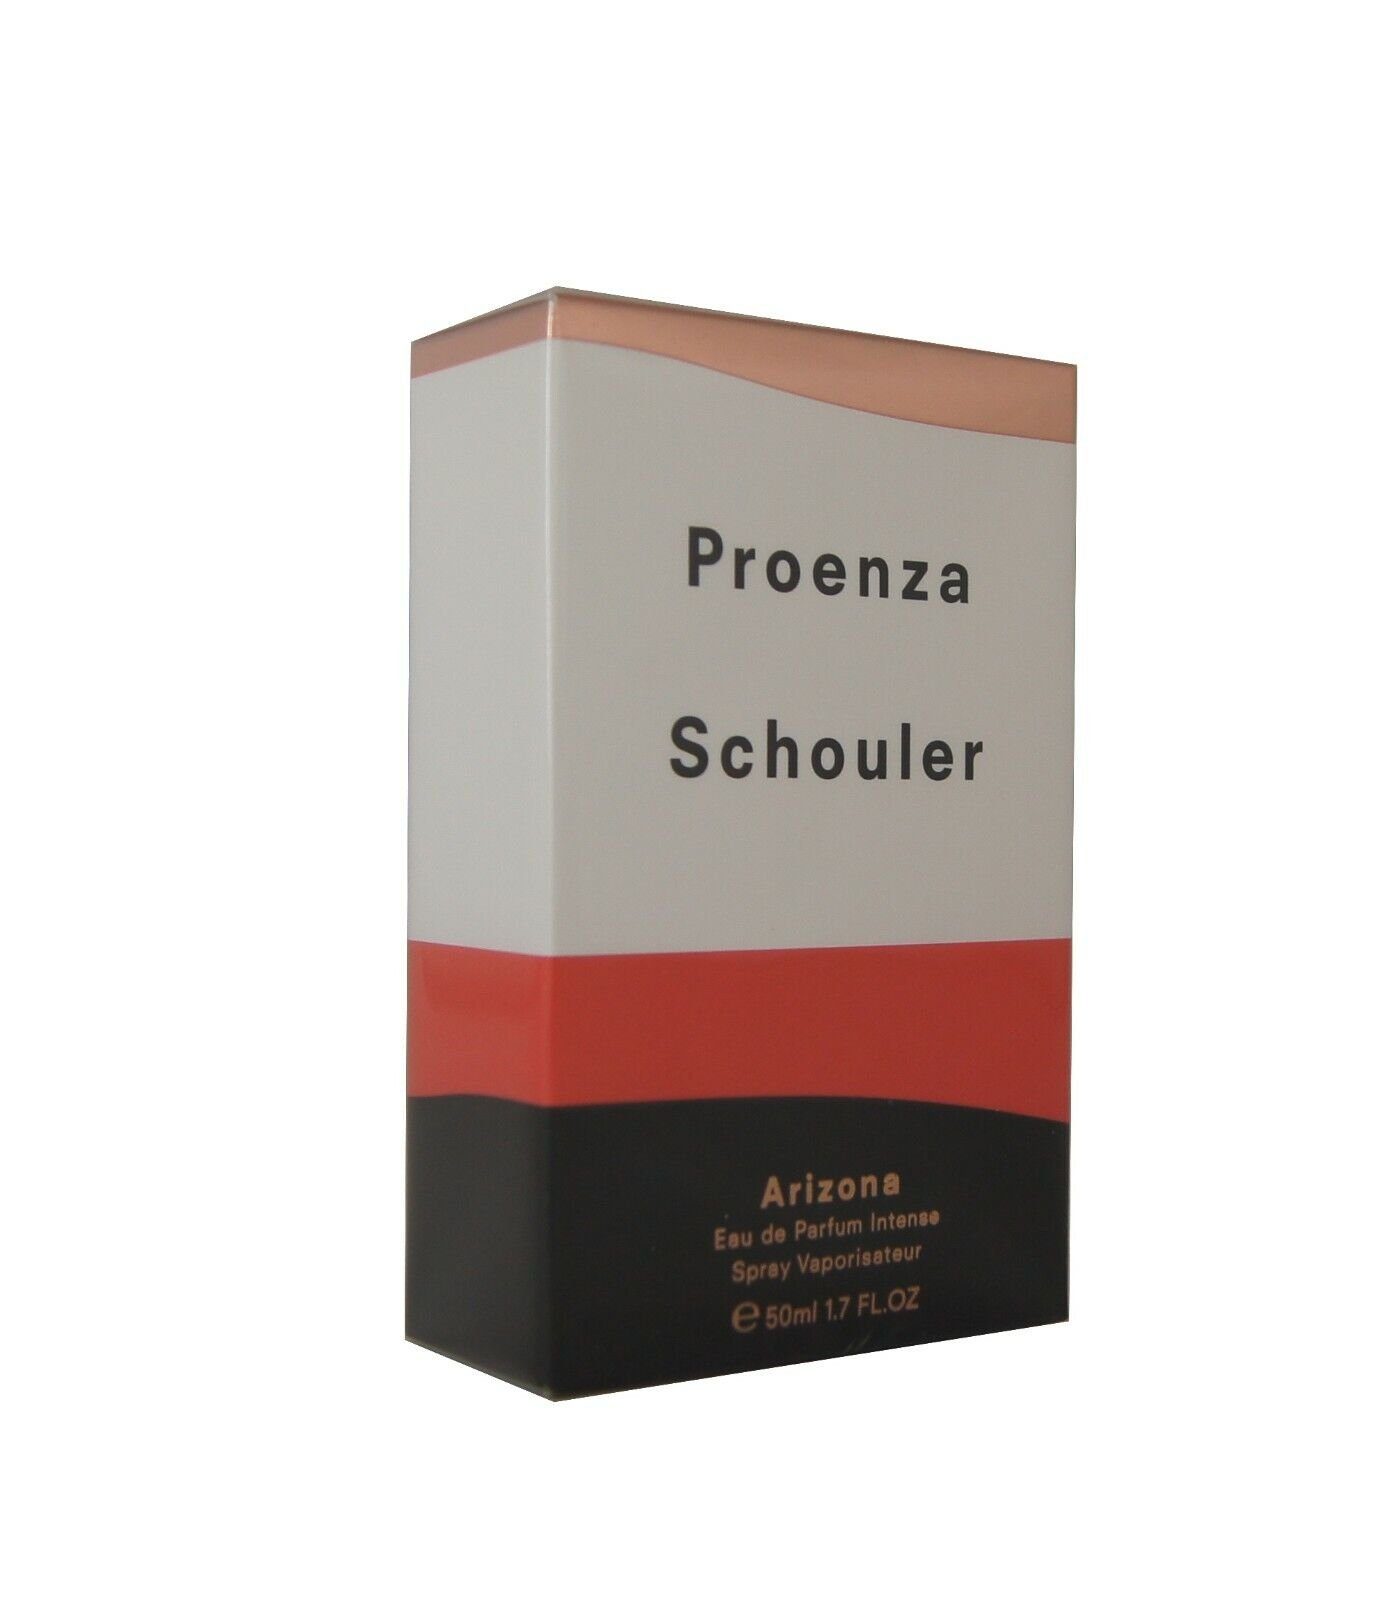 Proenza Intense Parfum Schouler 50ml. Eau Arizona PROENZA de SCHOULER Eau Parfum de